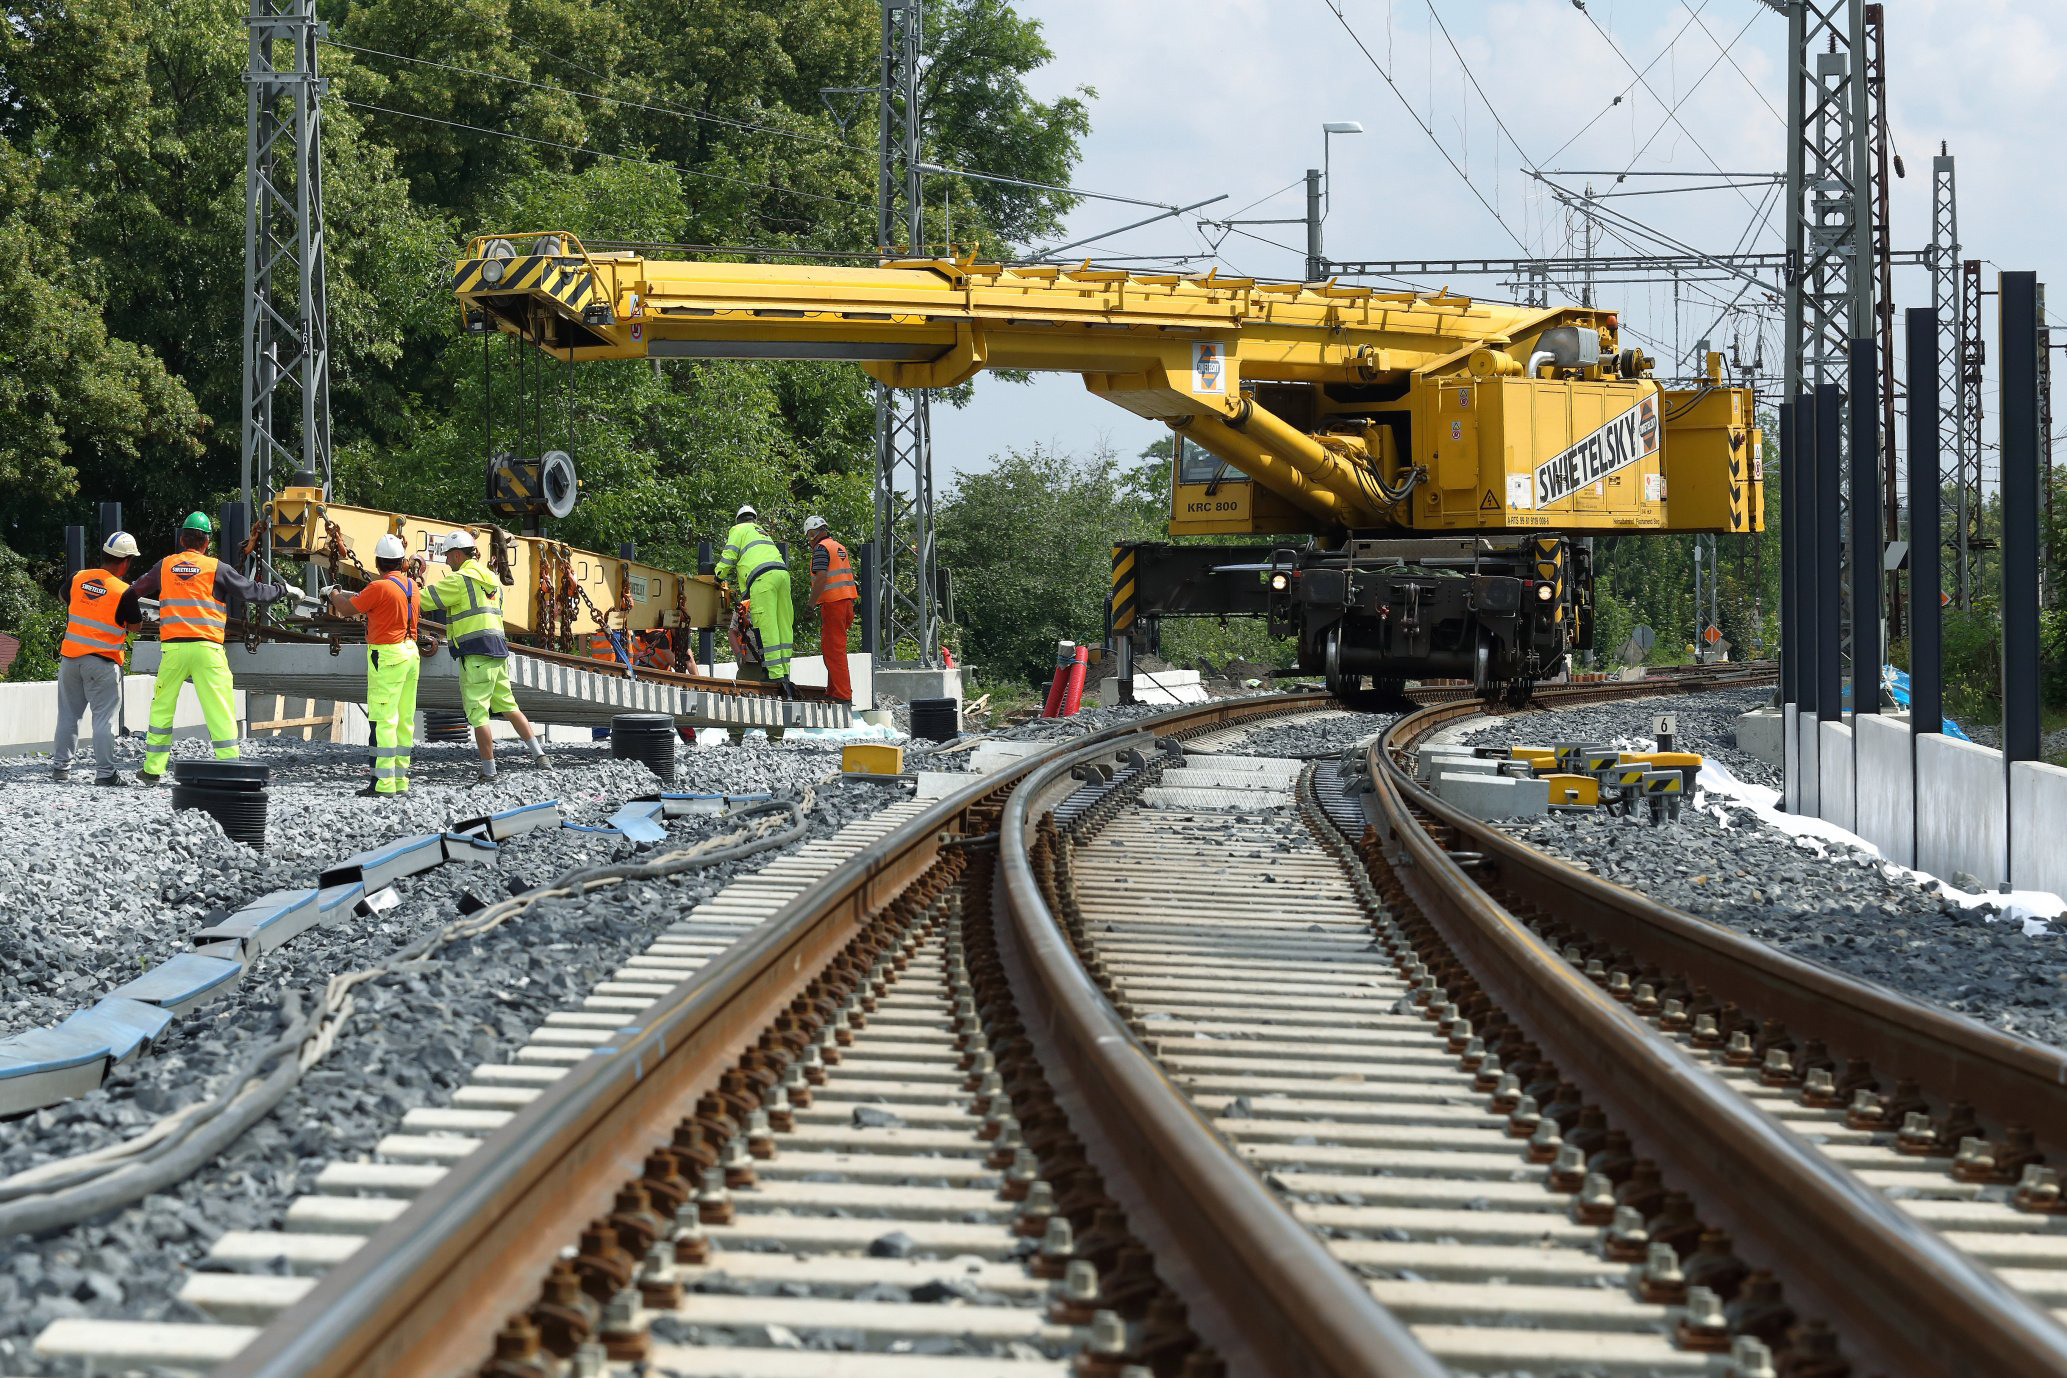 Obnova železniční stanice, Čelákovice - Železniční stavby